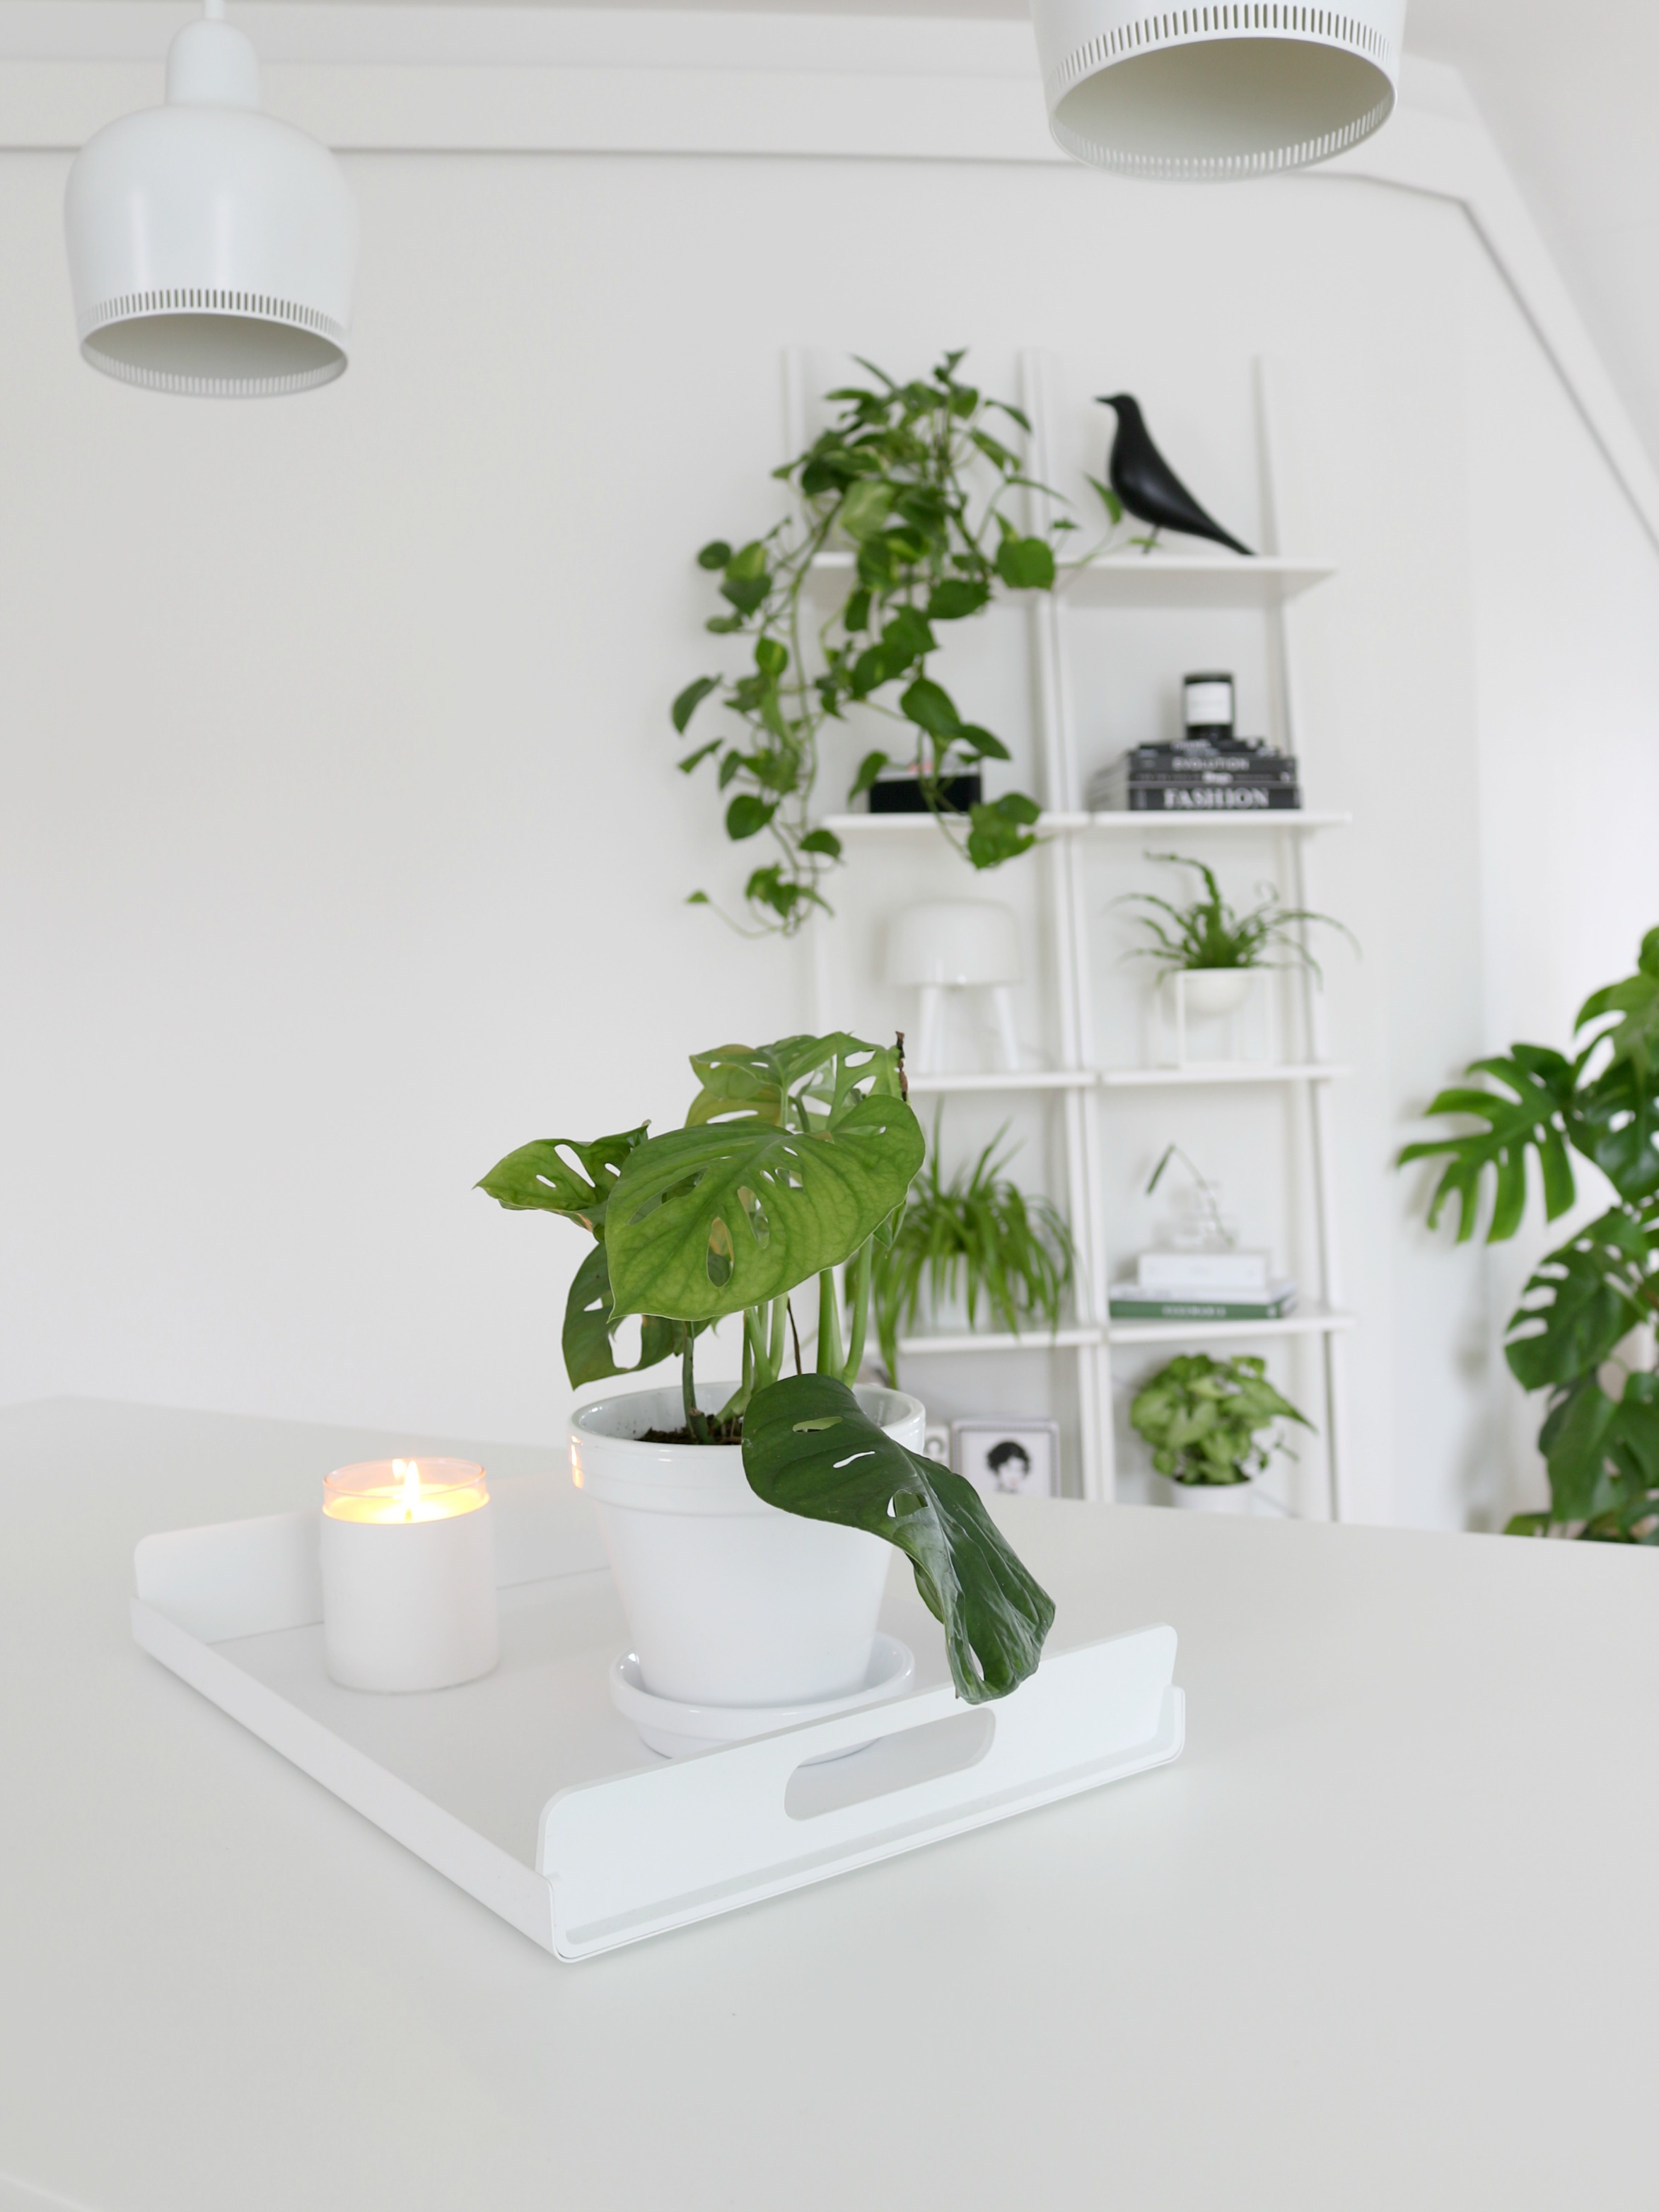 Omakotivalkoinen valkoinen keittiö minimalistinen sisustus skandinaavinen koti vihersisustus